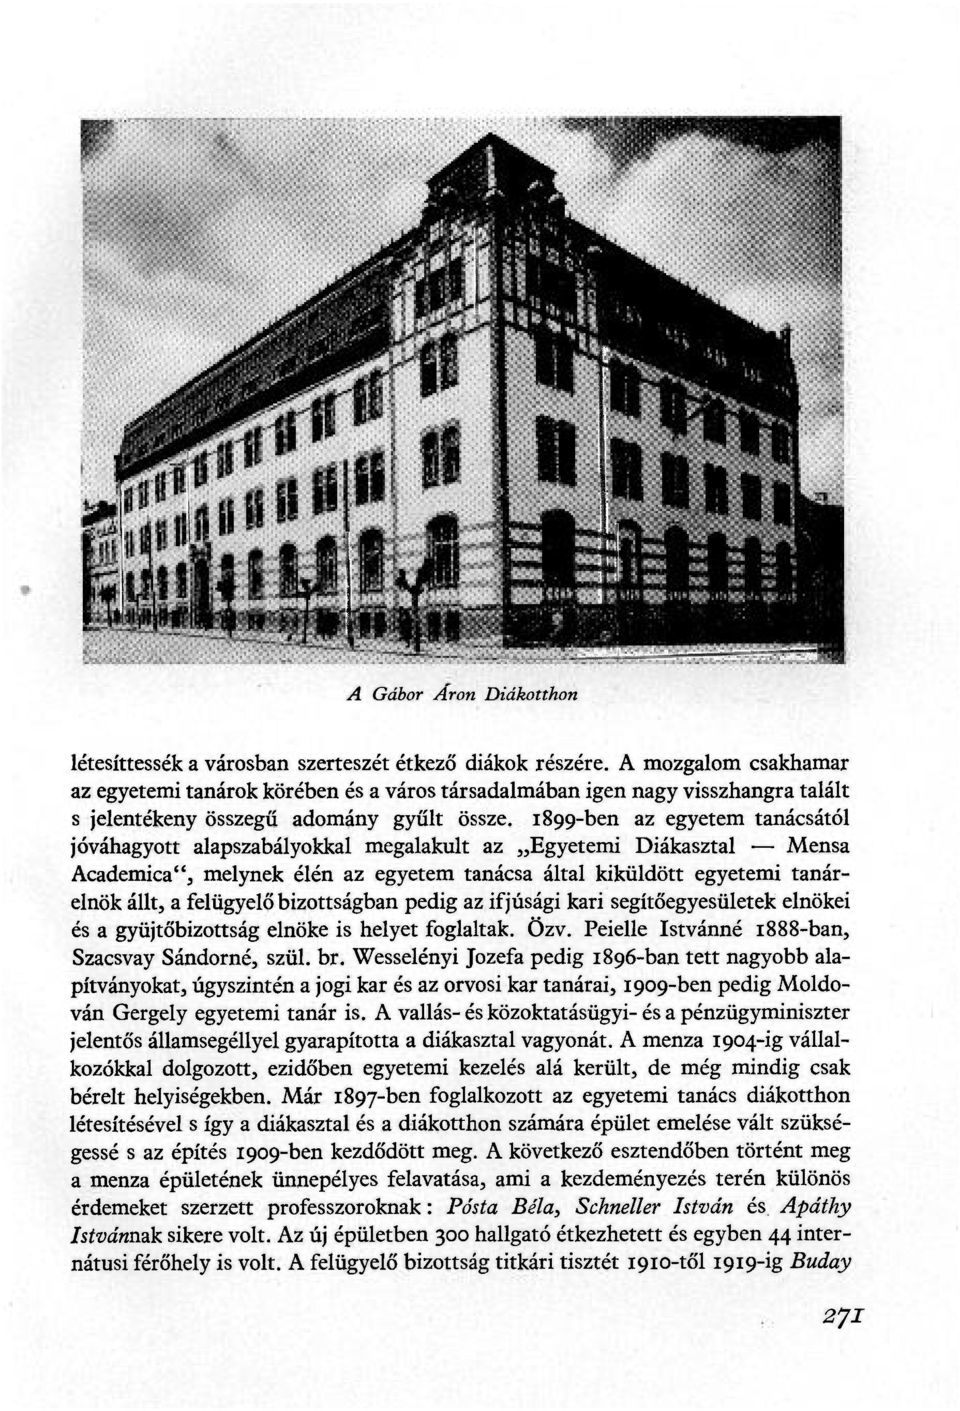 1899-ben az egyetem tanácsától jóváhagyott alapszabályokkal megalakult az Egyetemi Diákasztal Mensa Academica", melynek élén az egyetem tanácsa által kiküldött egyetemi tanárelnök állt, a felügyelő